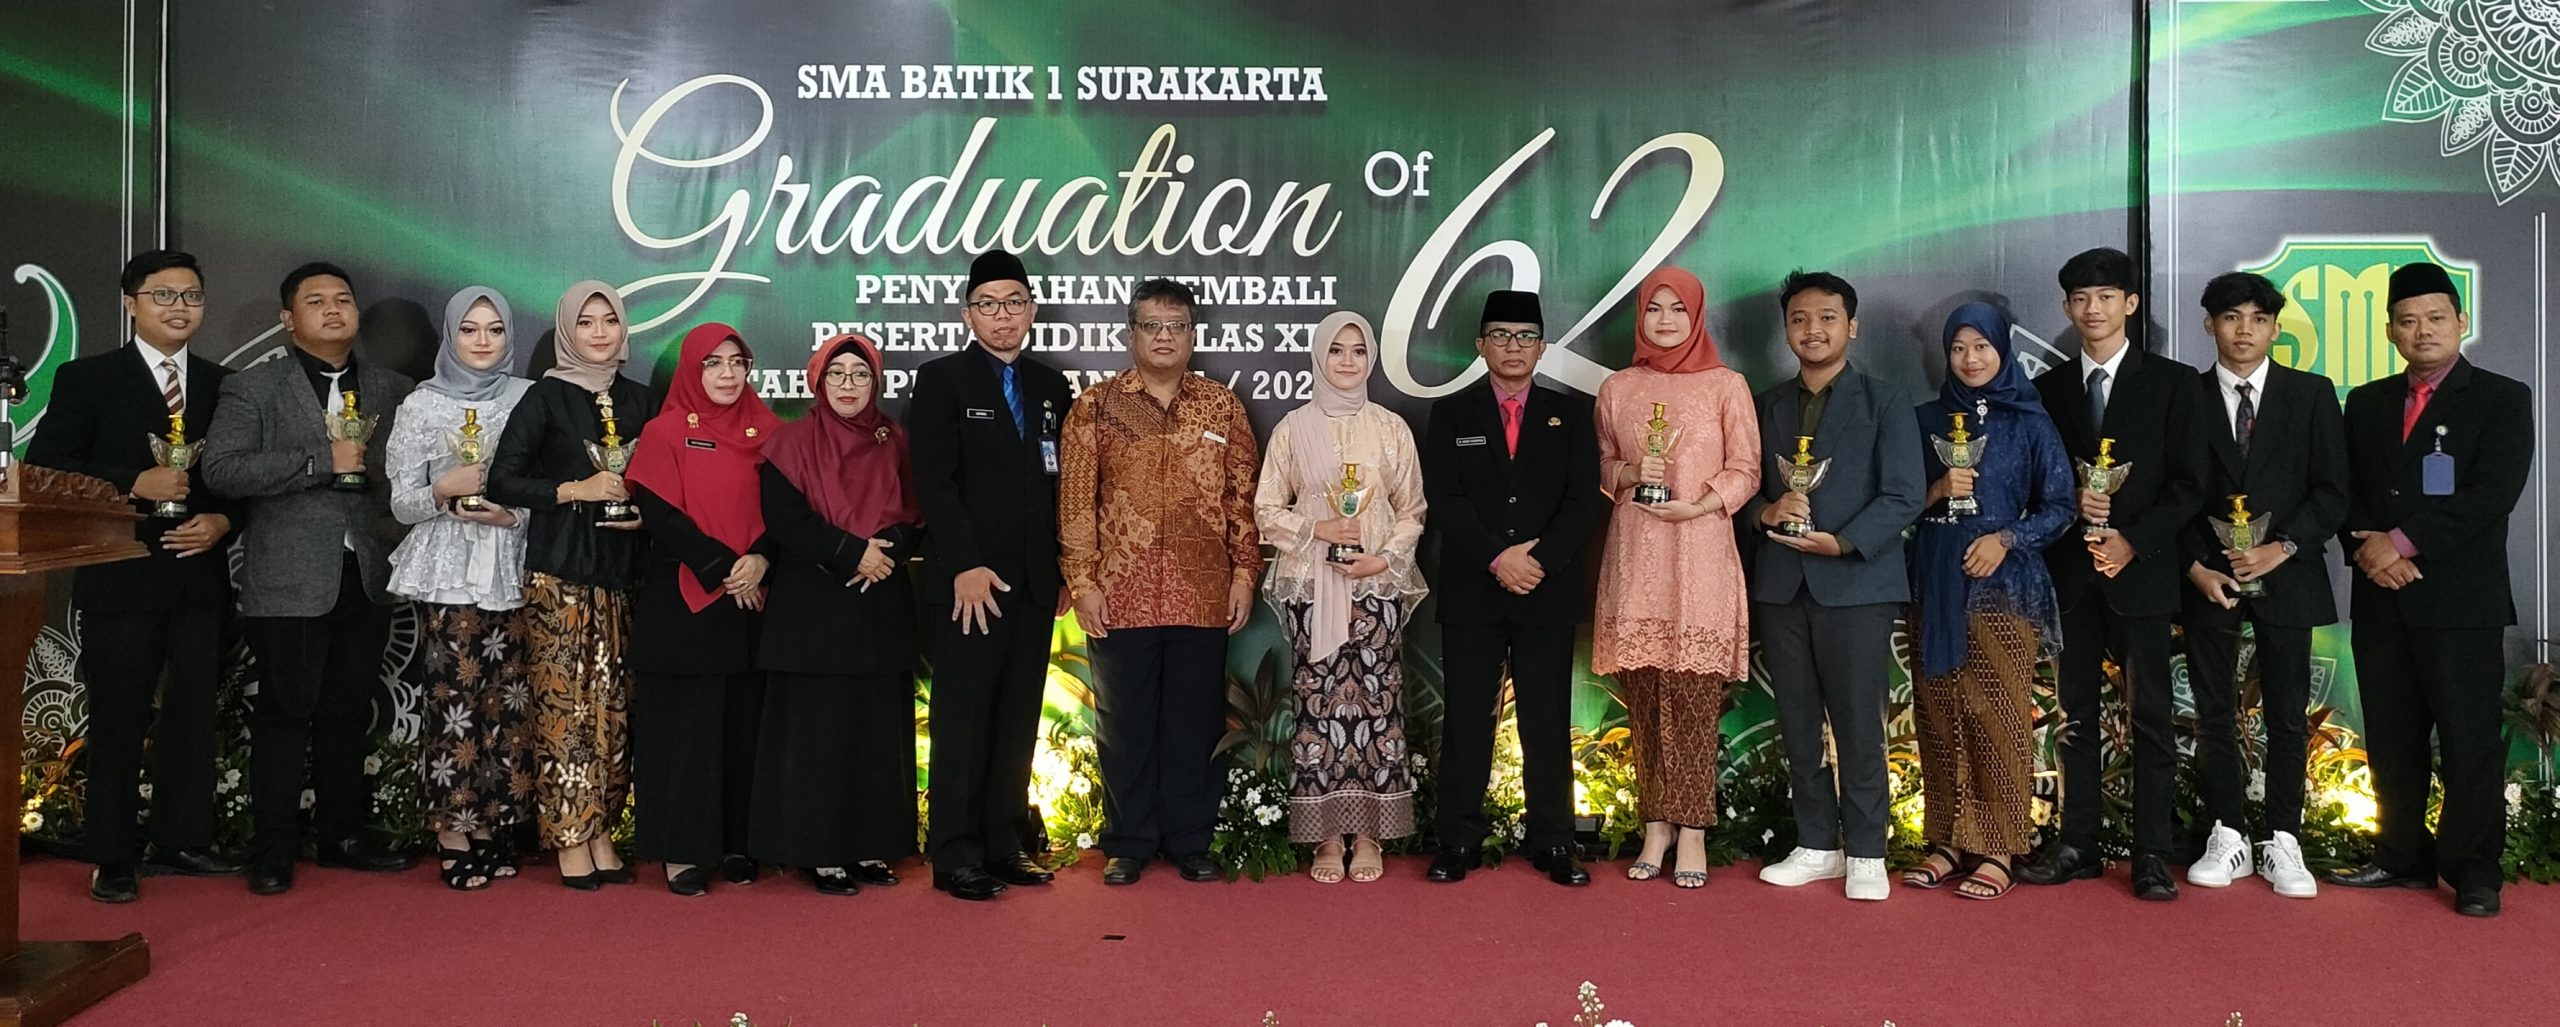 Graduation of SMA Batik 1 Surakarta Angkatan 62